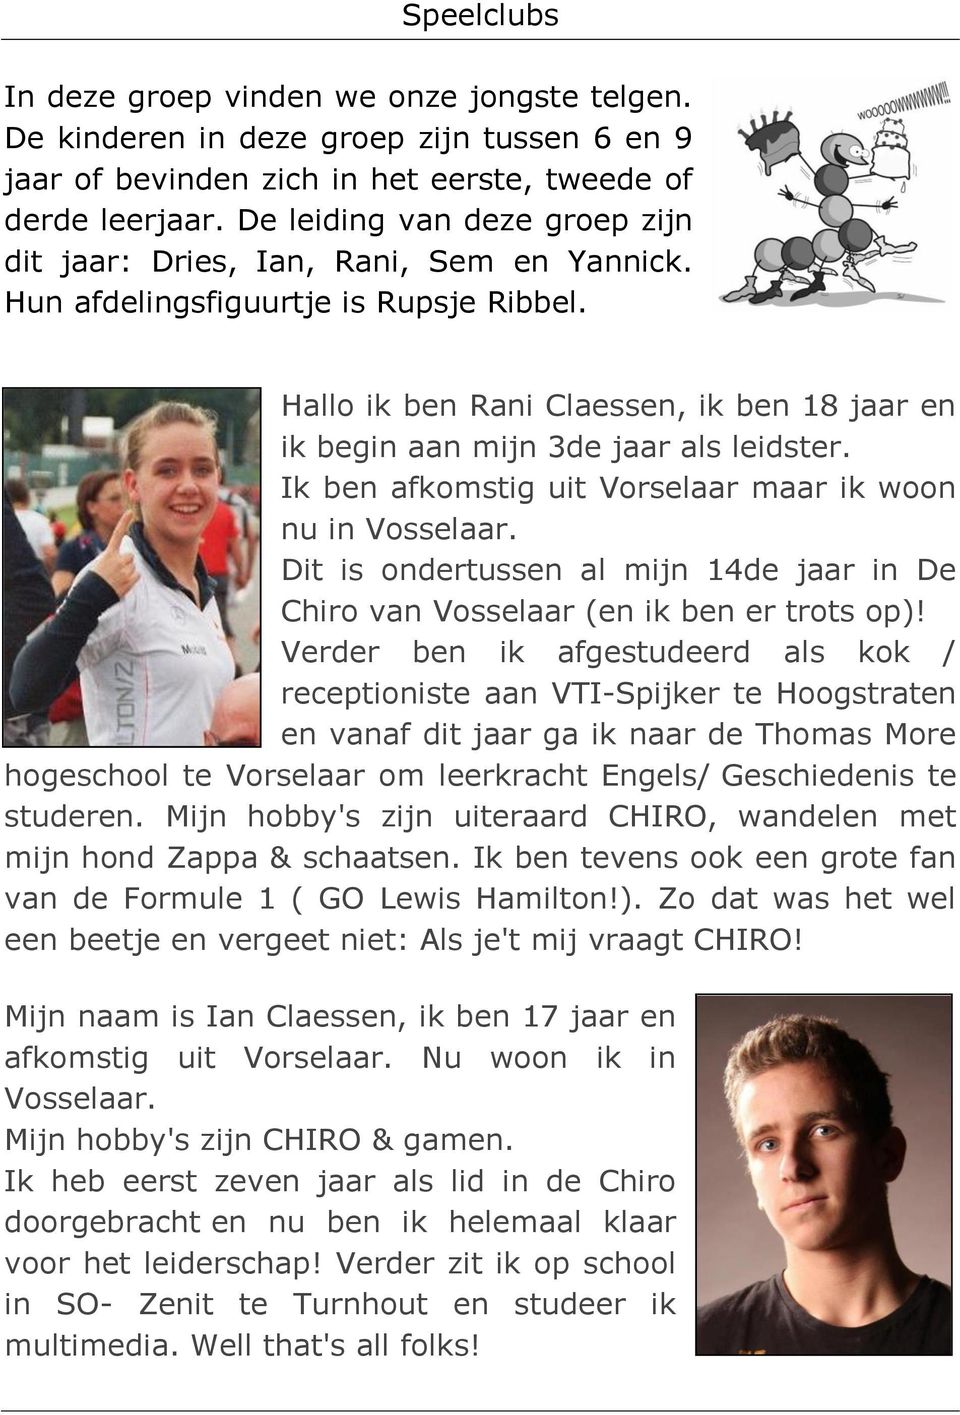 Hallo ik ben Rani Claessen, ik ben 18 jaar en ik begin aan mijn 3de jaar als leidster. Ik ben afkomstig uit Vorselaar maar ik woon nu in Vosselaar.